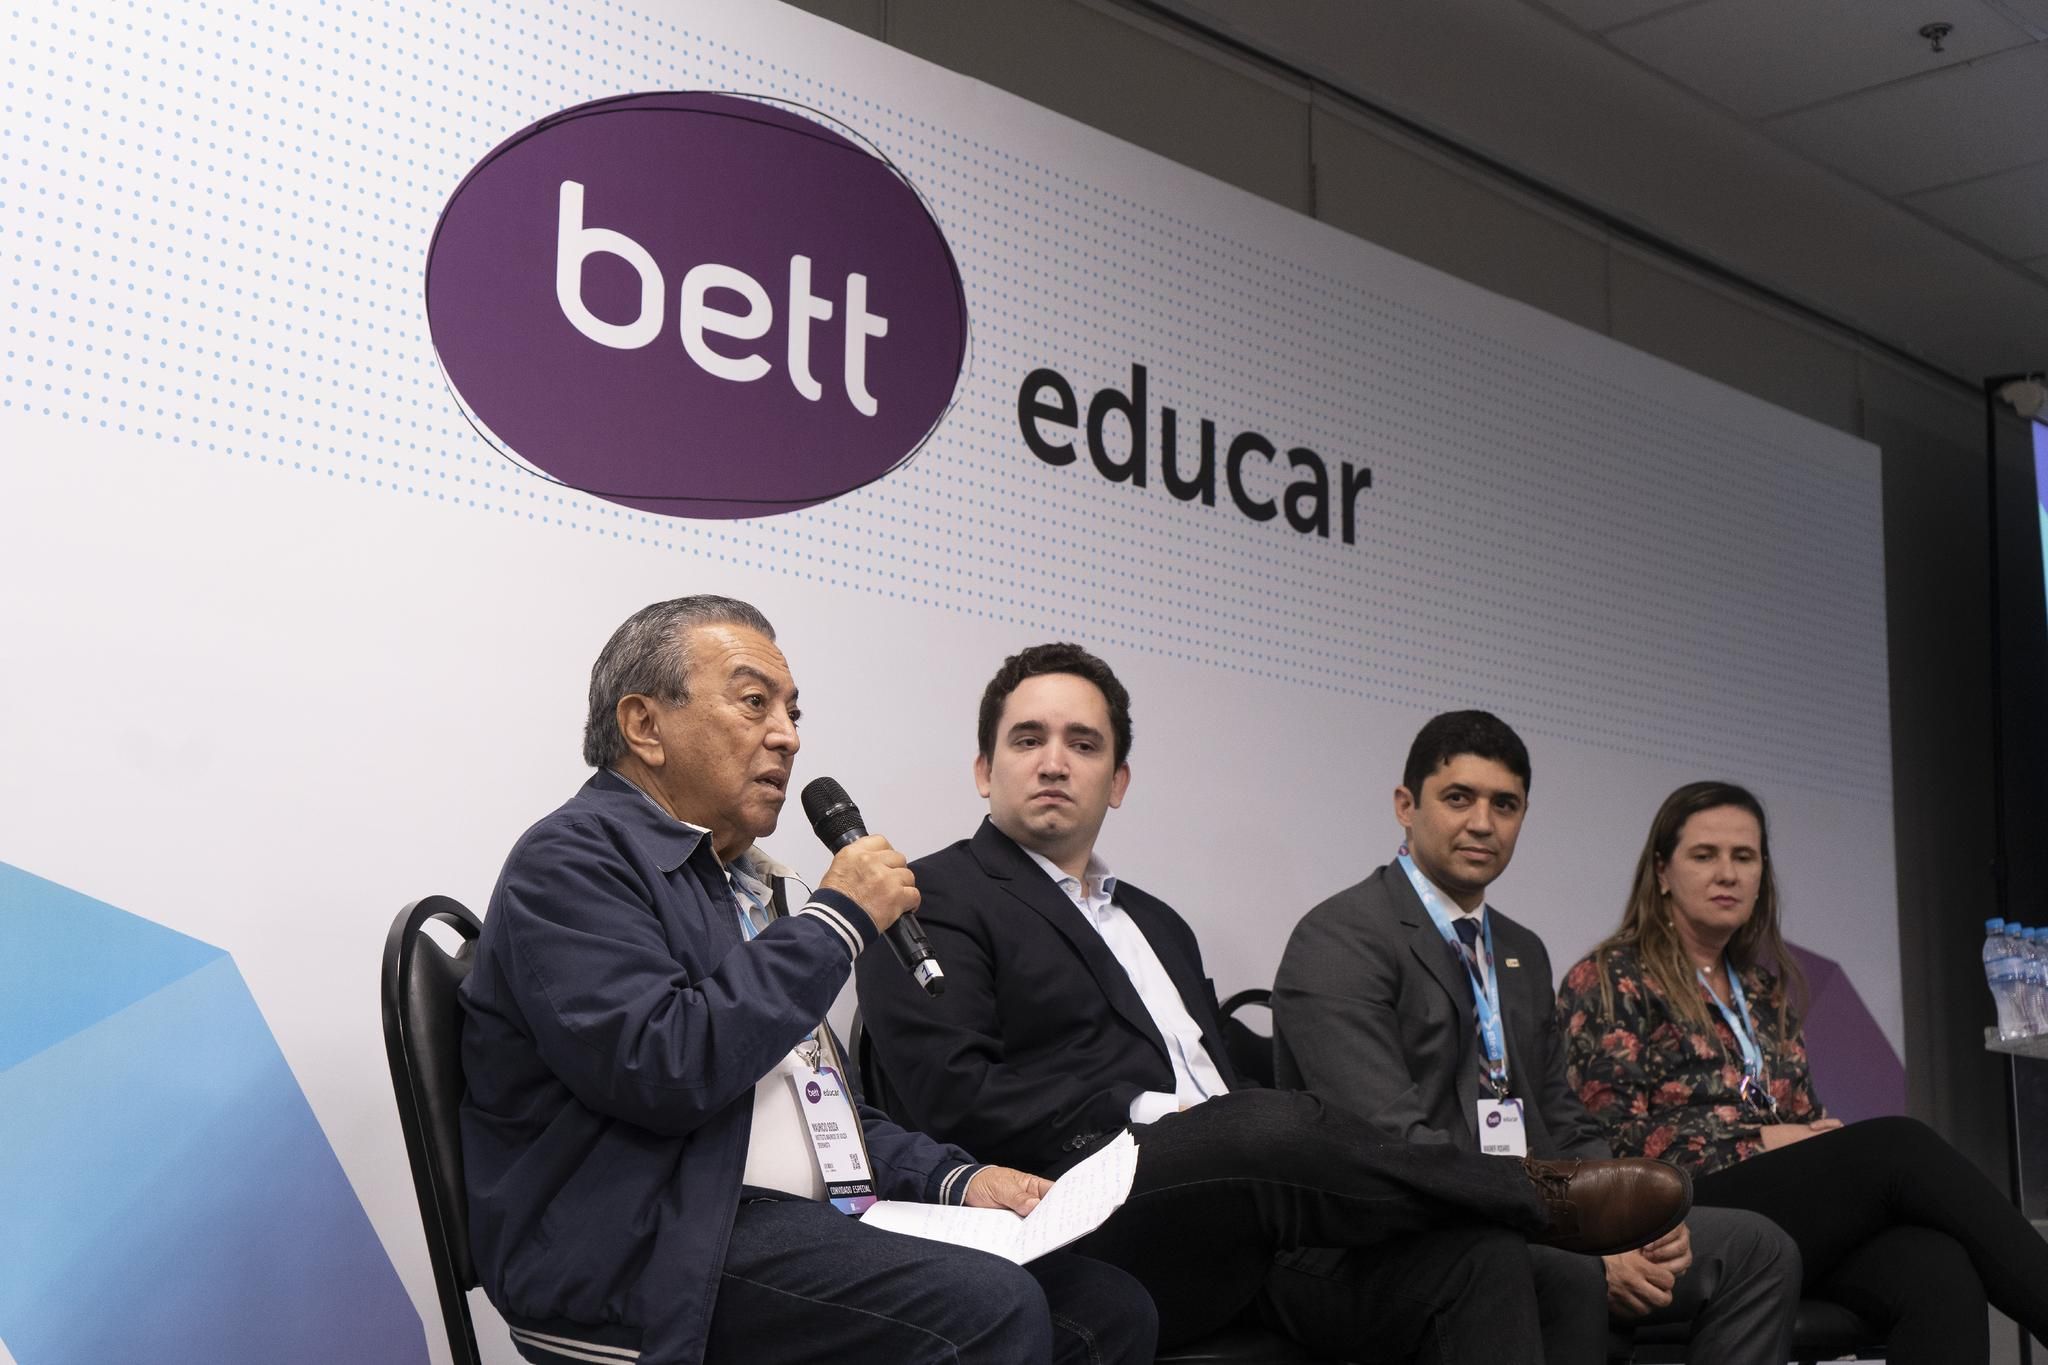 Na Bett Educar 2020, Organização dos Estados Ibero-americanos (OEI) terá painéis sobre Ética & Cidadania na Escola e Educação Infantil